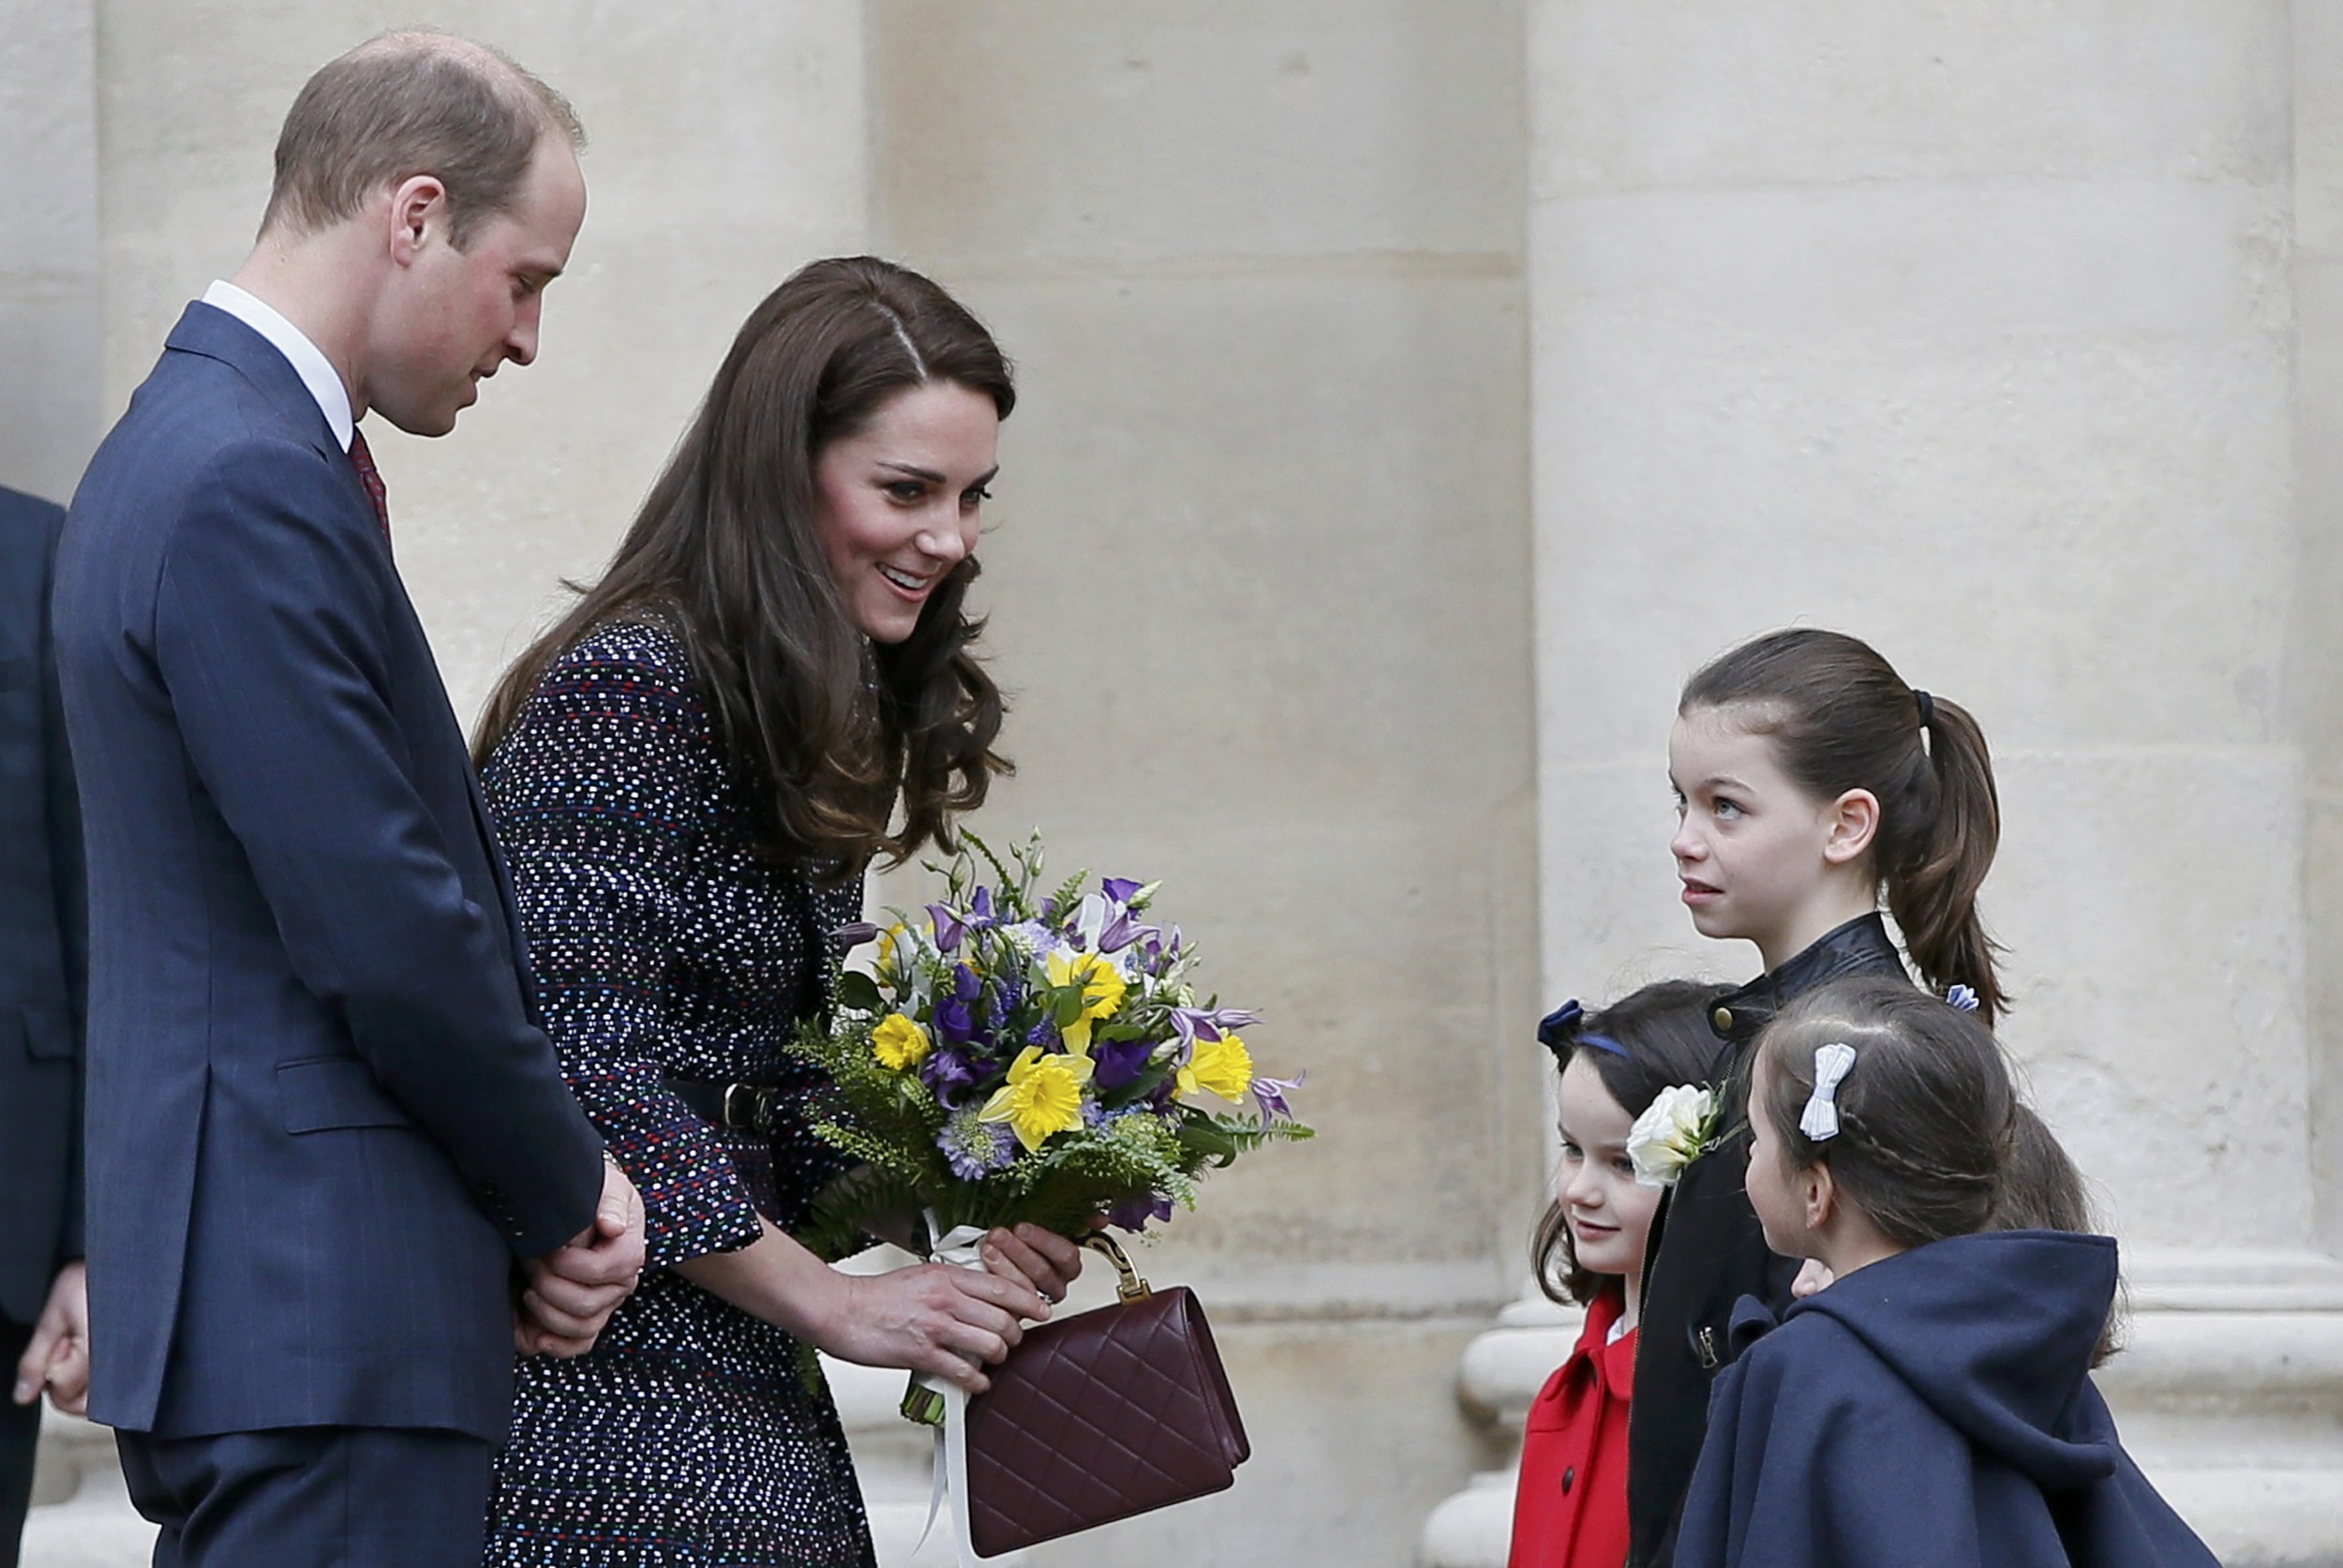 الأميرة البريطانية تمنح فتيات باقة من الزهور